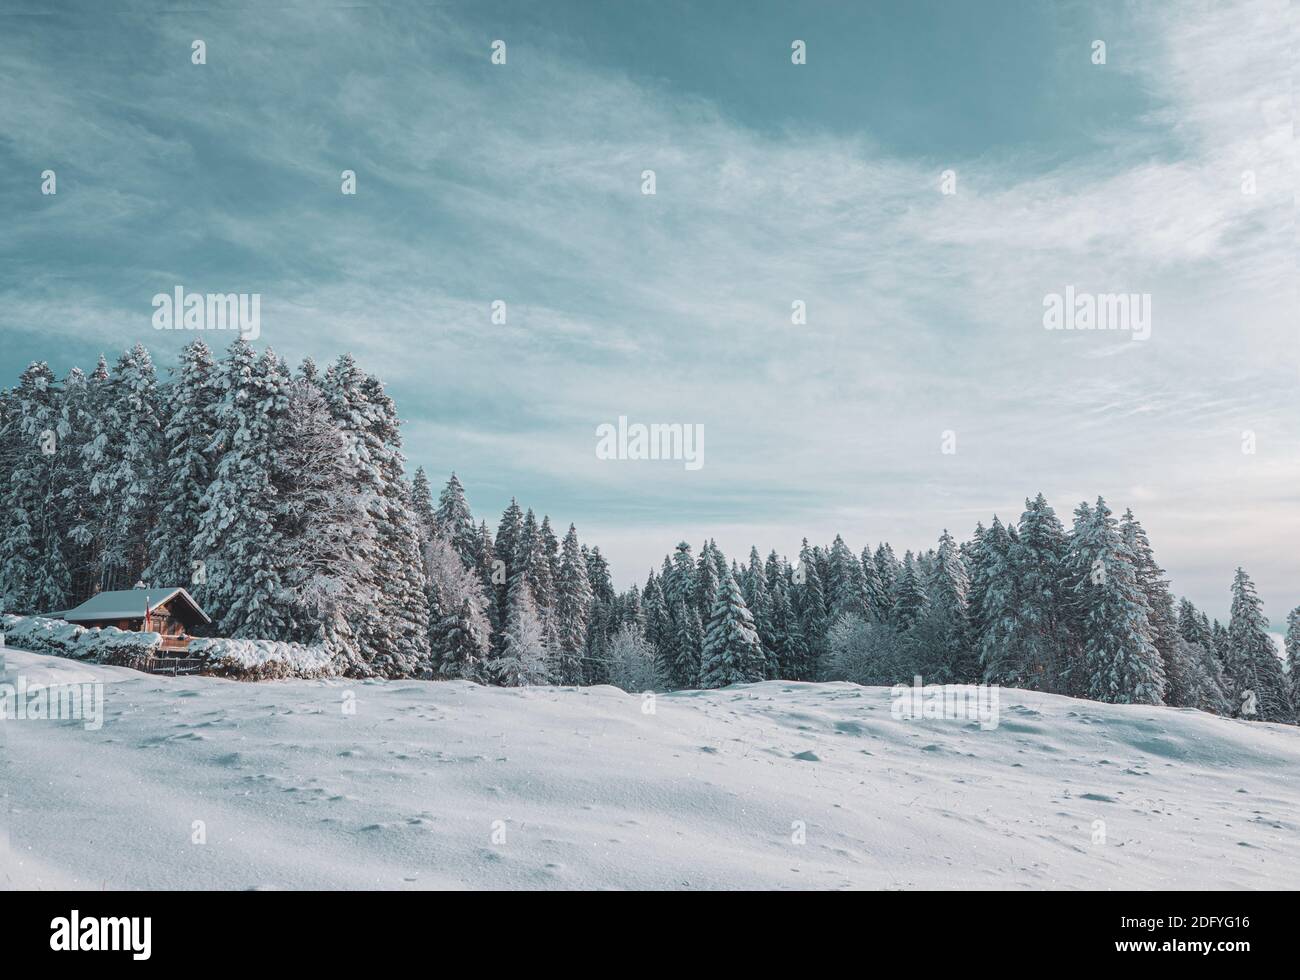 Una splendida scena alpina. Uno chalet alpino è coperto di neve dopo una fresca caduta di neve e immerso in una foresta innevata in questo splendido scenario invernale. Foto Stock